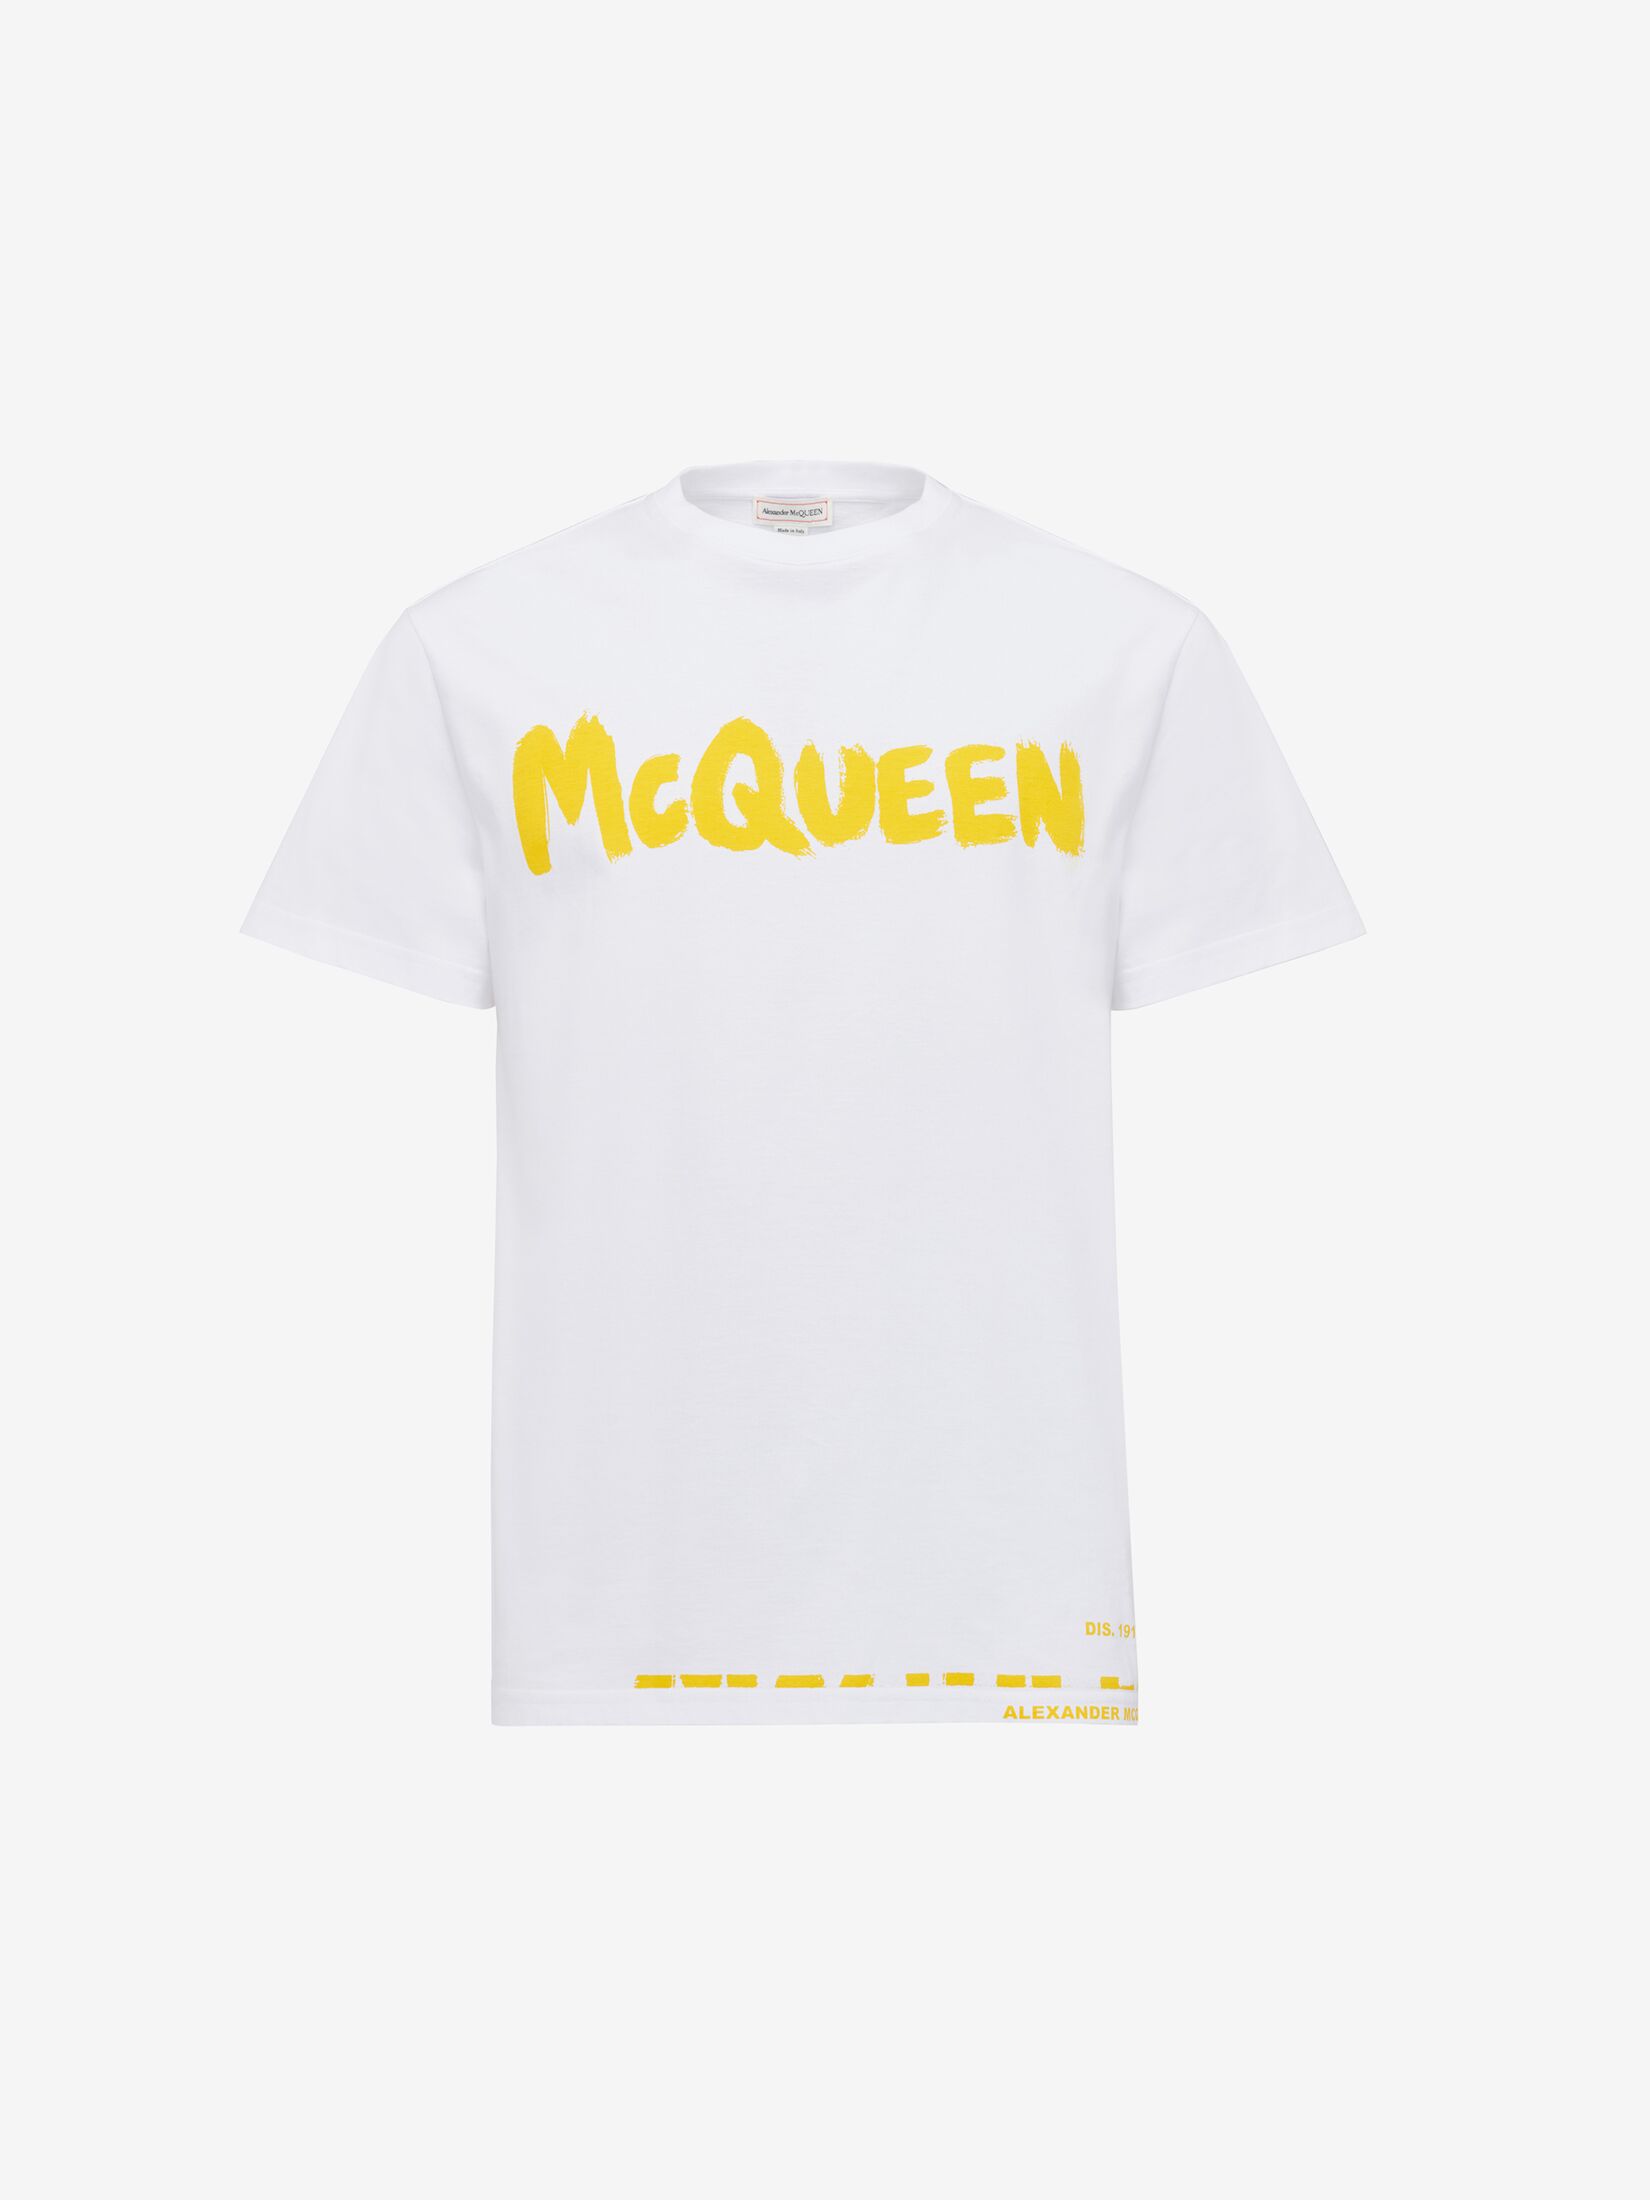 McQueenグラフィティ Tシャツ | ブラック/カーキ | Alexander McQueen JP